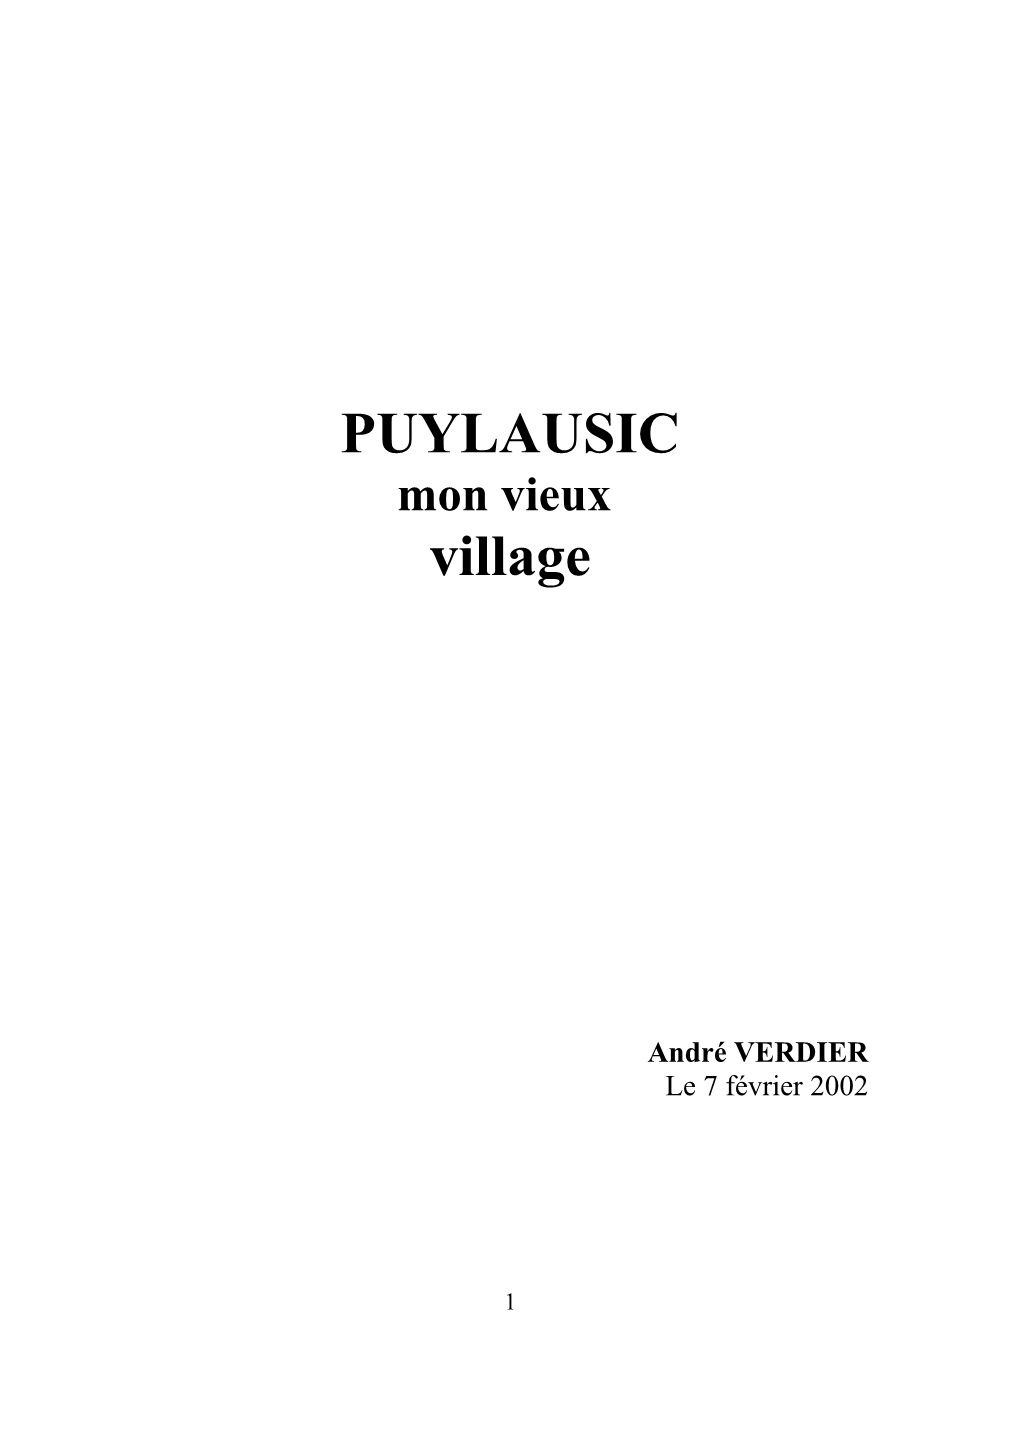 PUYLAUSIC Village